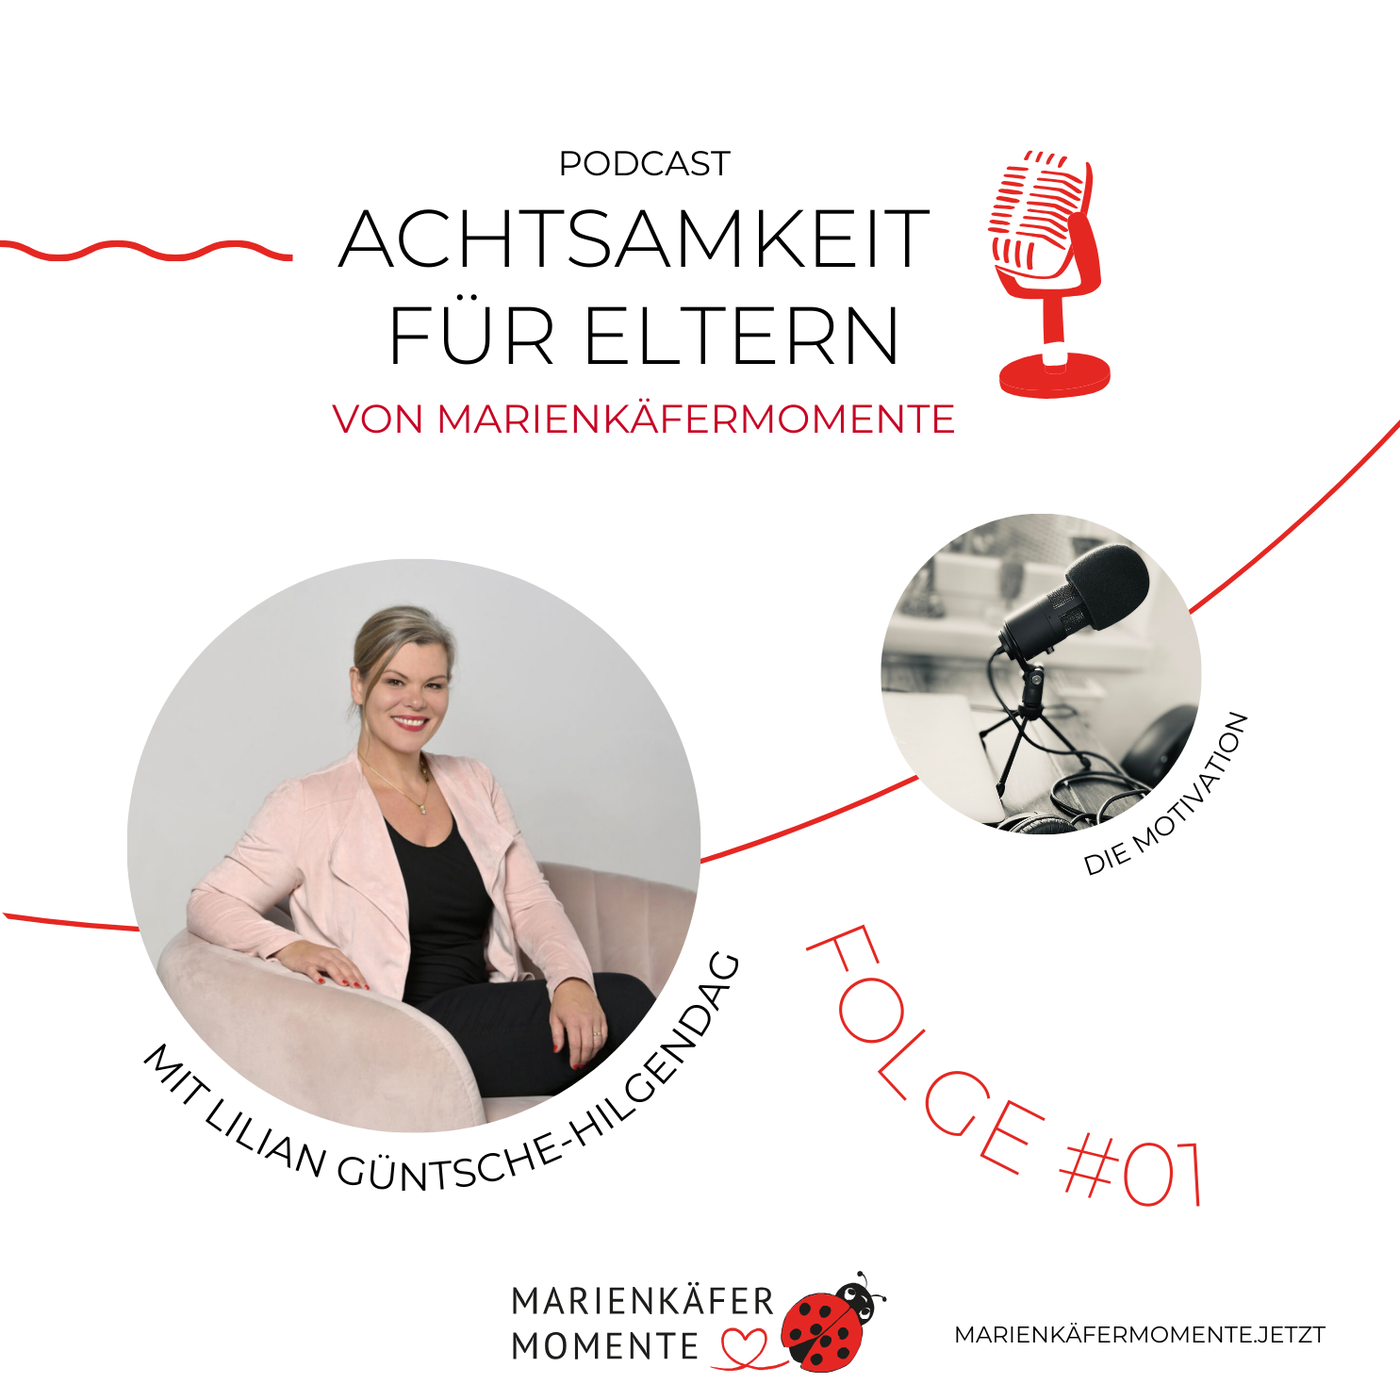 #01: Die Motivation zum Podcast “Achtsamkeit für Eltern” von MARIENKÄFERMOMENTE